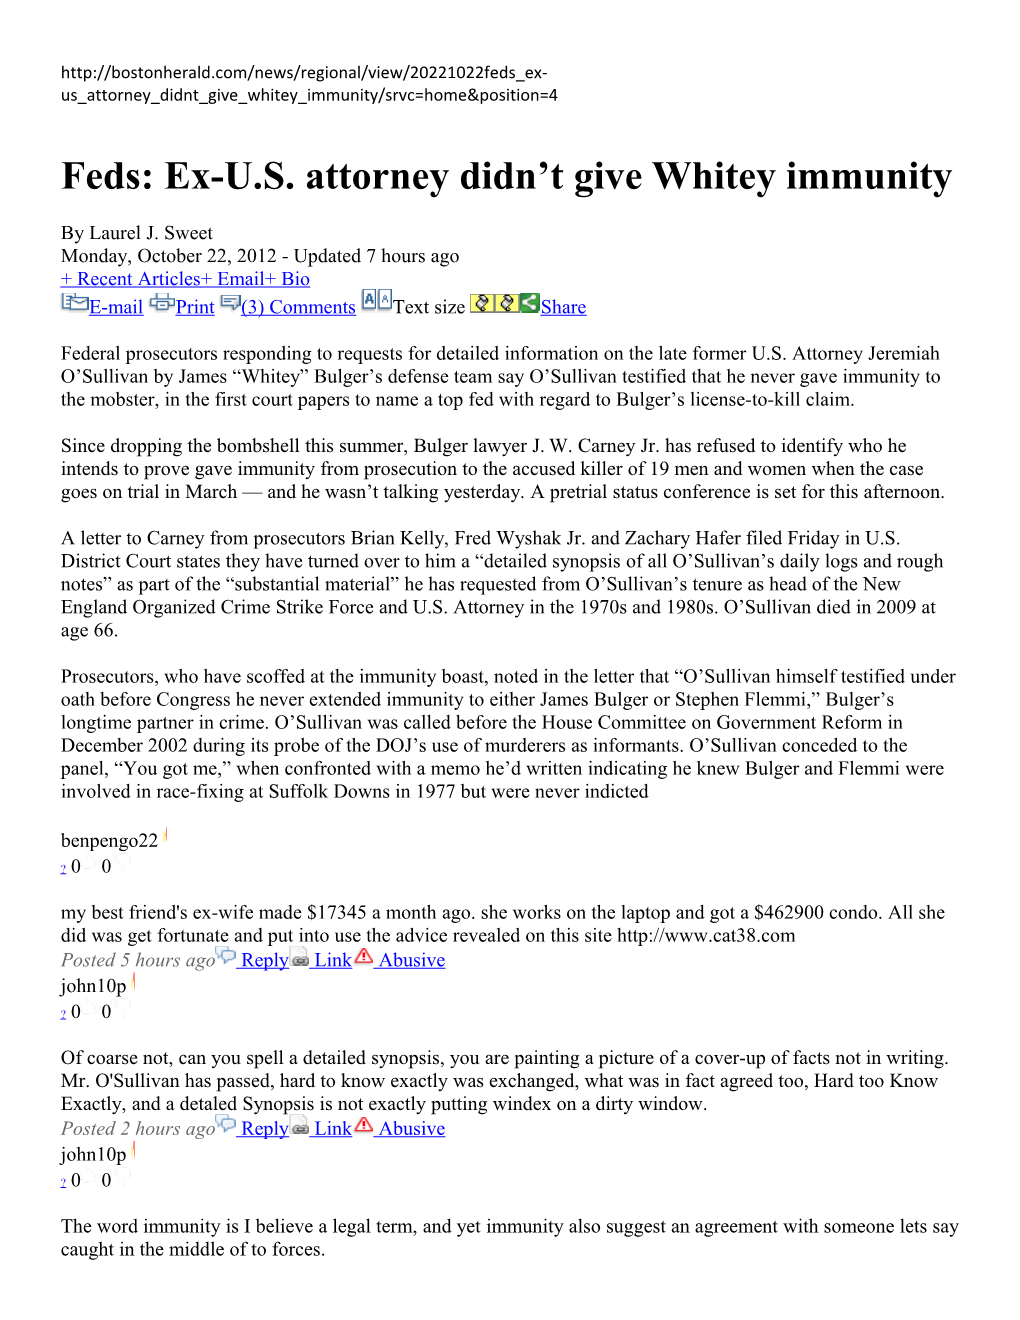 Feds: Ex-U.S. Attorney Didn T Give Whitey Immunity